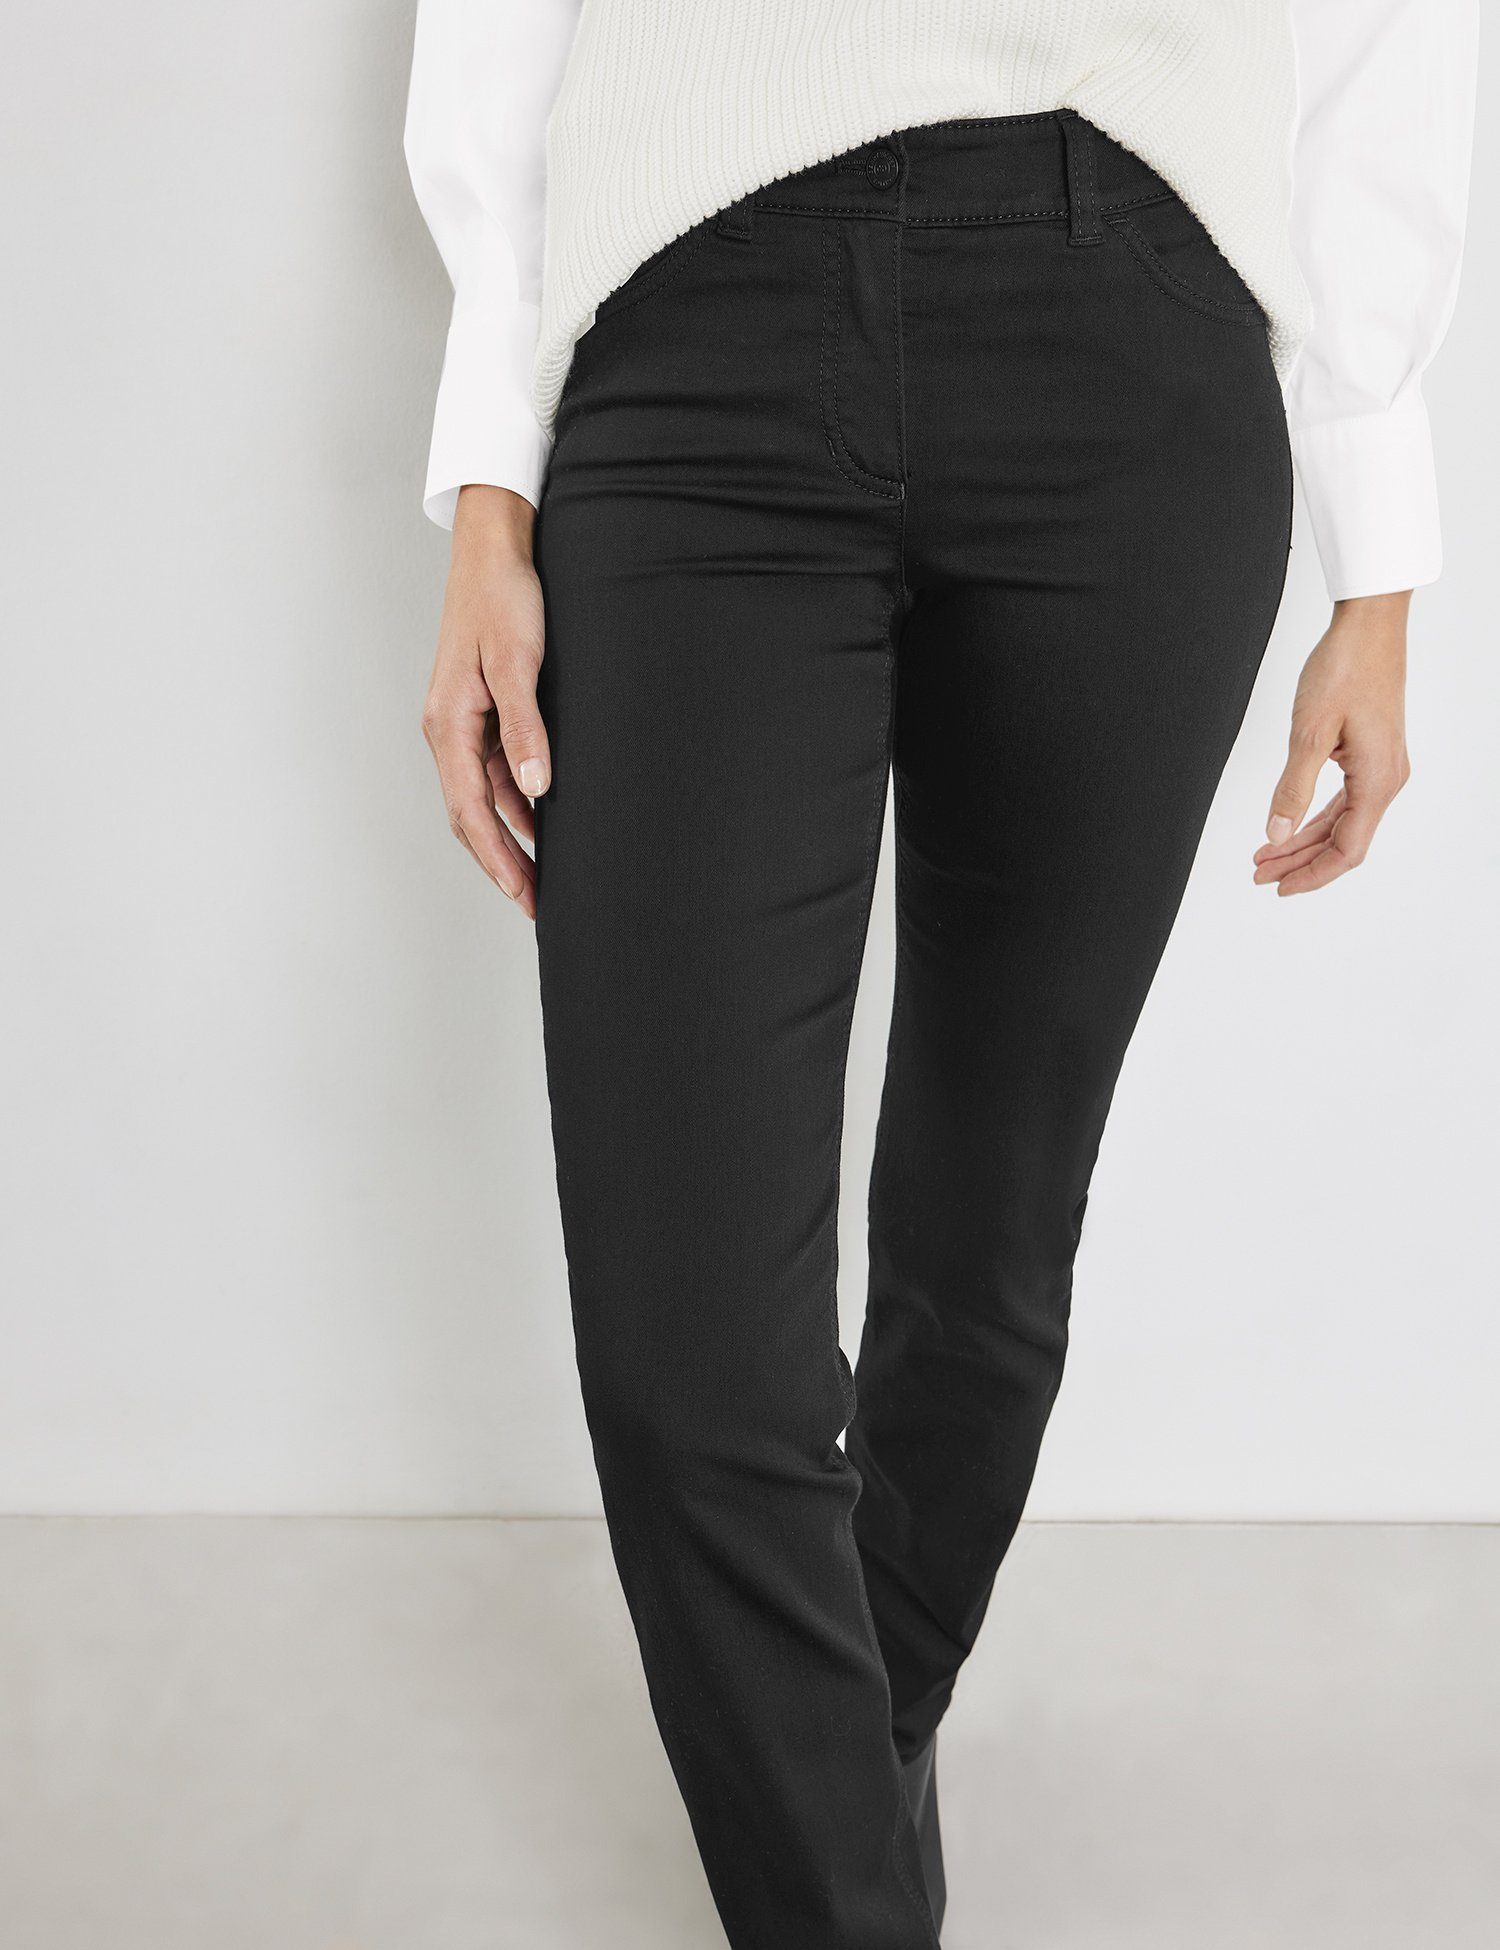 Hose GERRY black black WEBER Slim-fit-Jeans denim Jeans